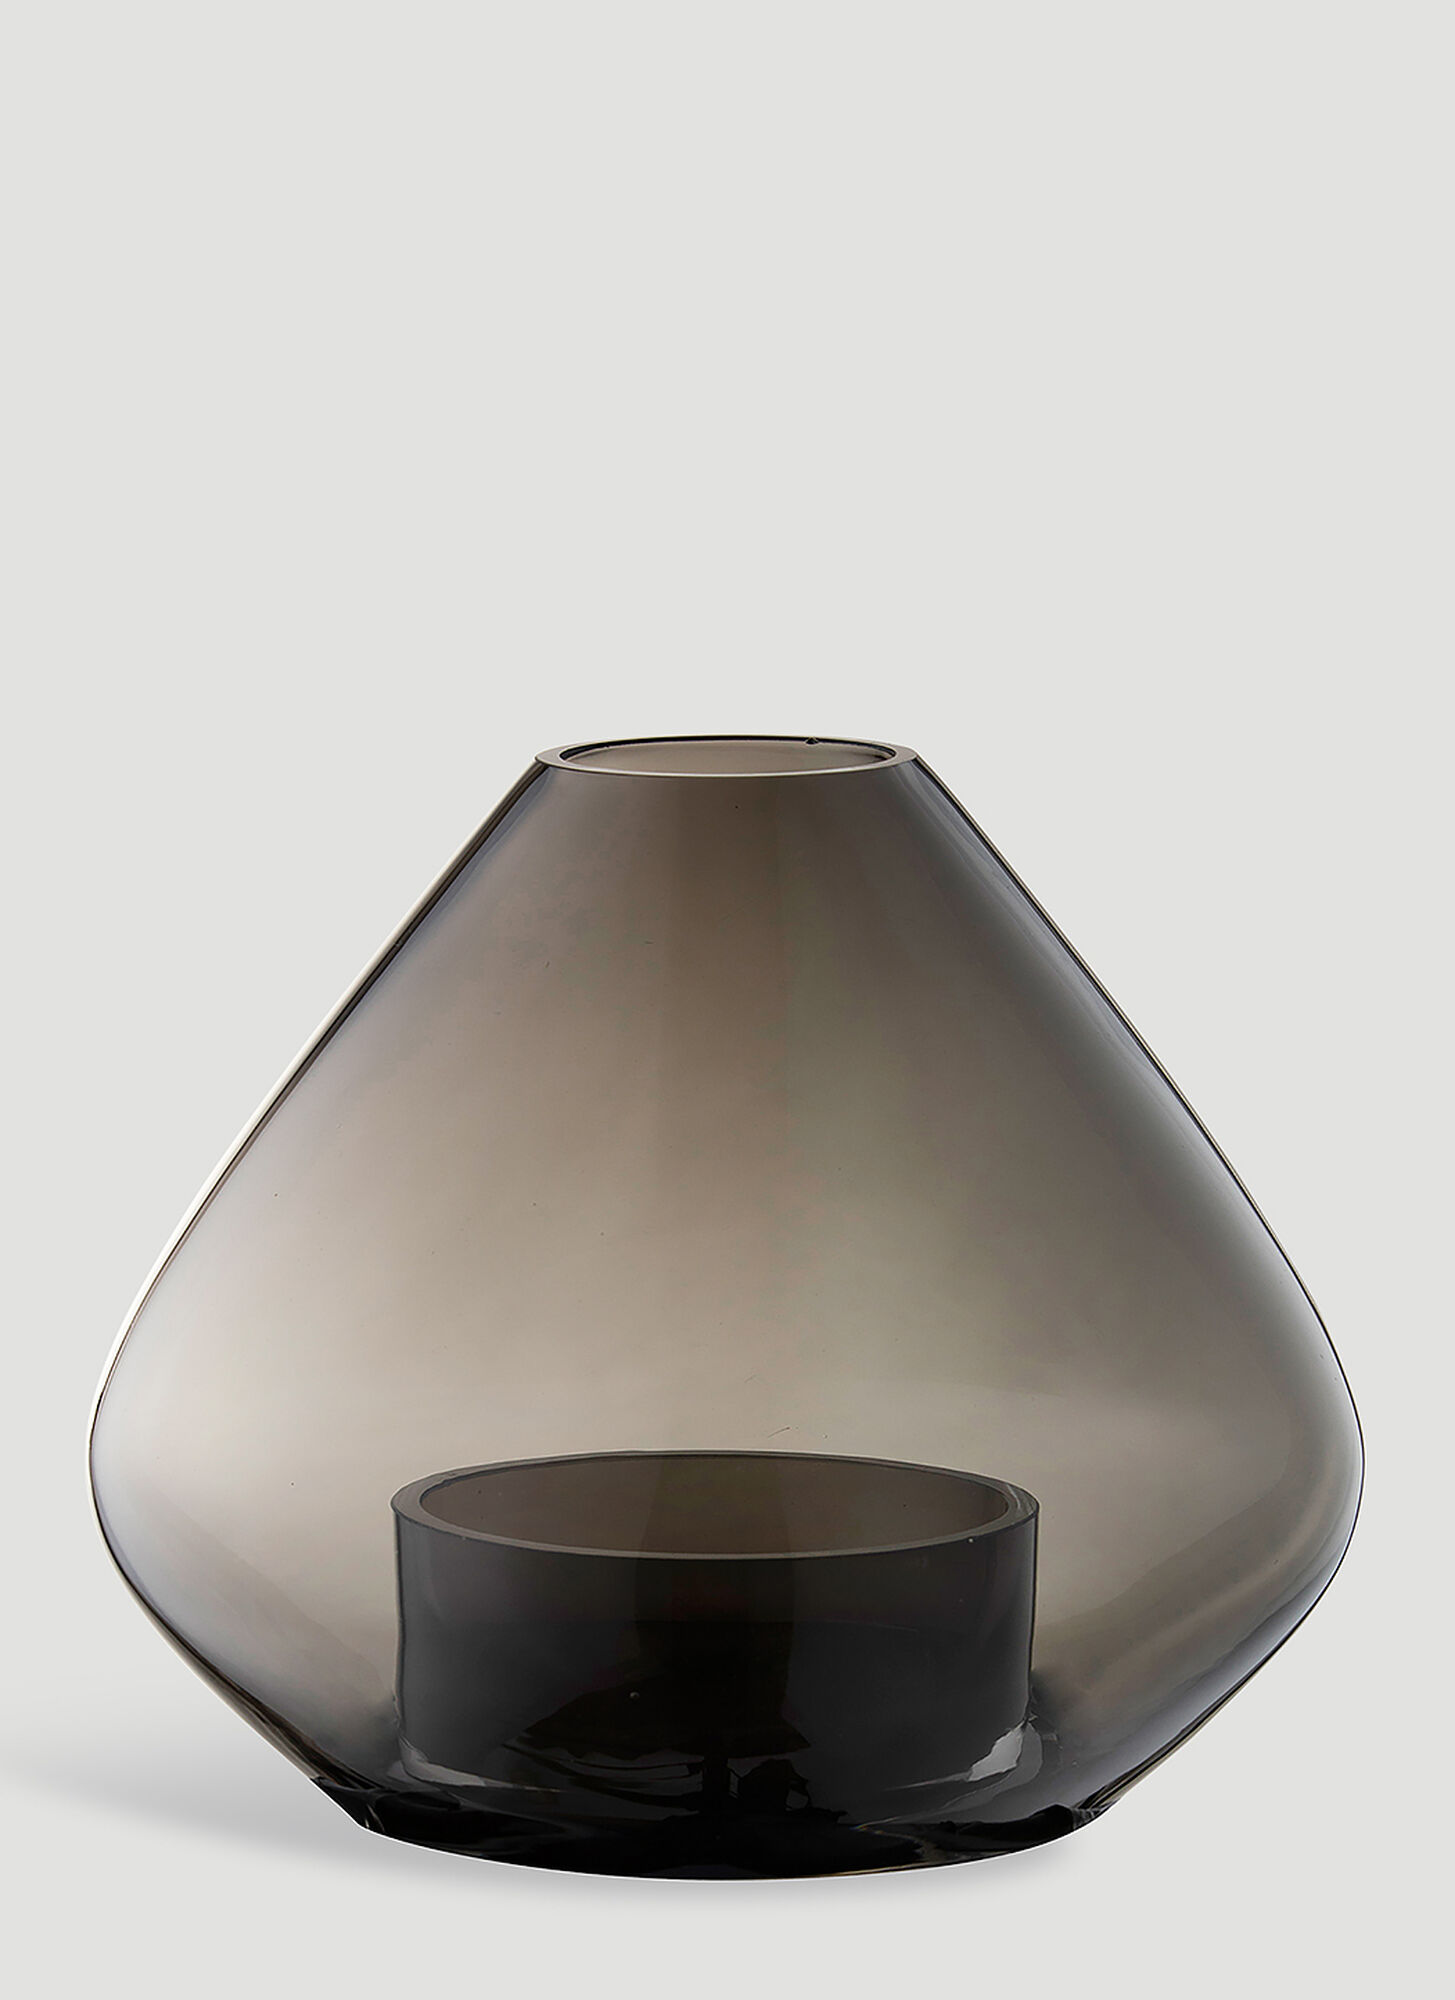 Aytm Uno Small Lantern Vase Unisex Black